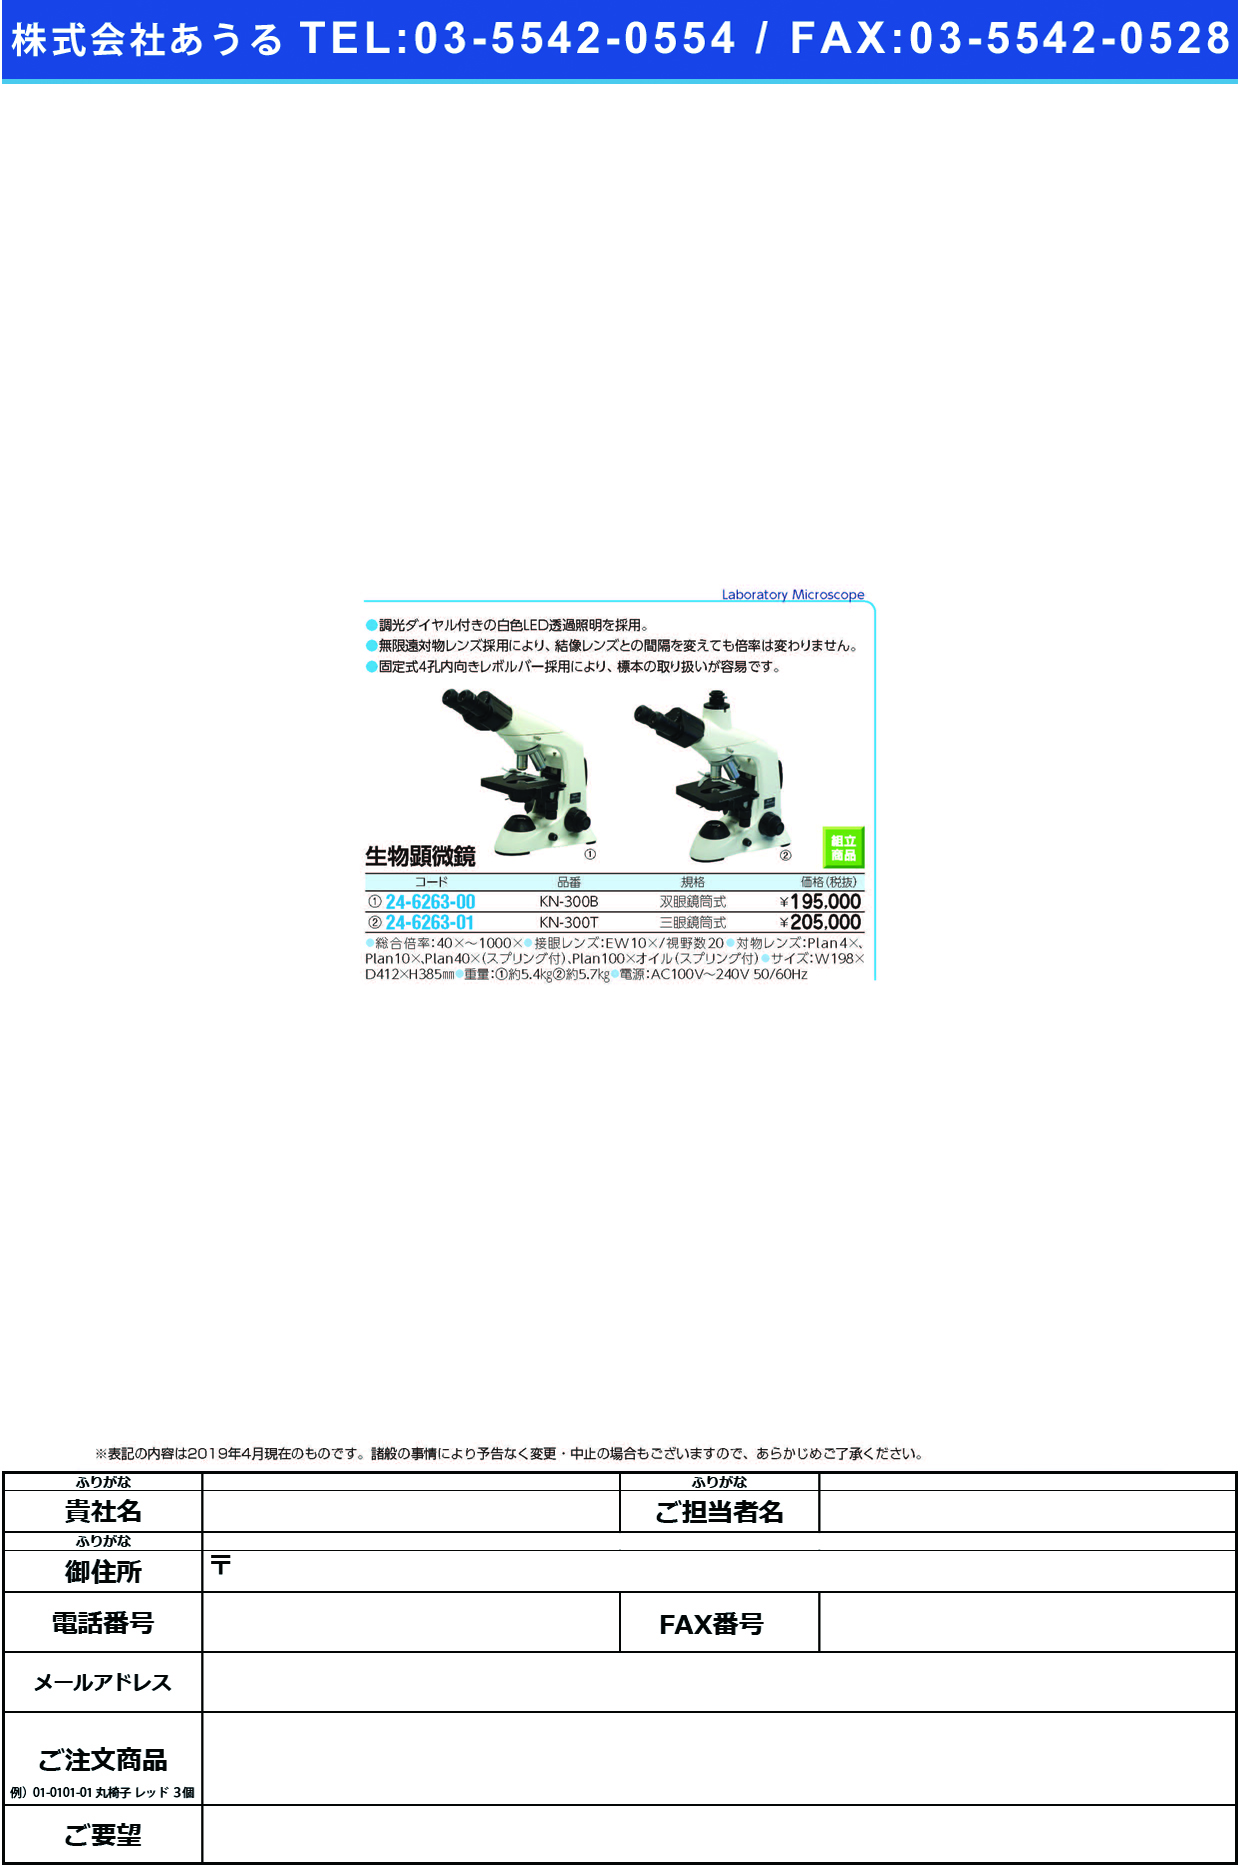 (24-6263-00)生物顕微鏡双眼鏡筒式 KN-300B ｾｲﾌﾞﾂｹﾝﾋﾞｷｮｳﾗﾎﾞﾗｯｸｽ【1台単位】【2019年カタログ商品】